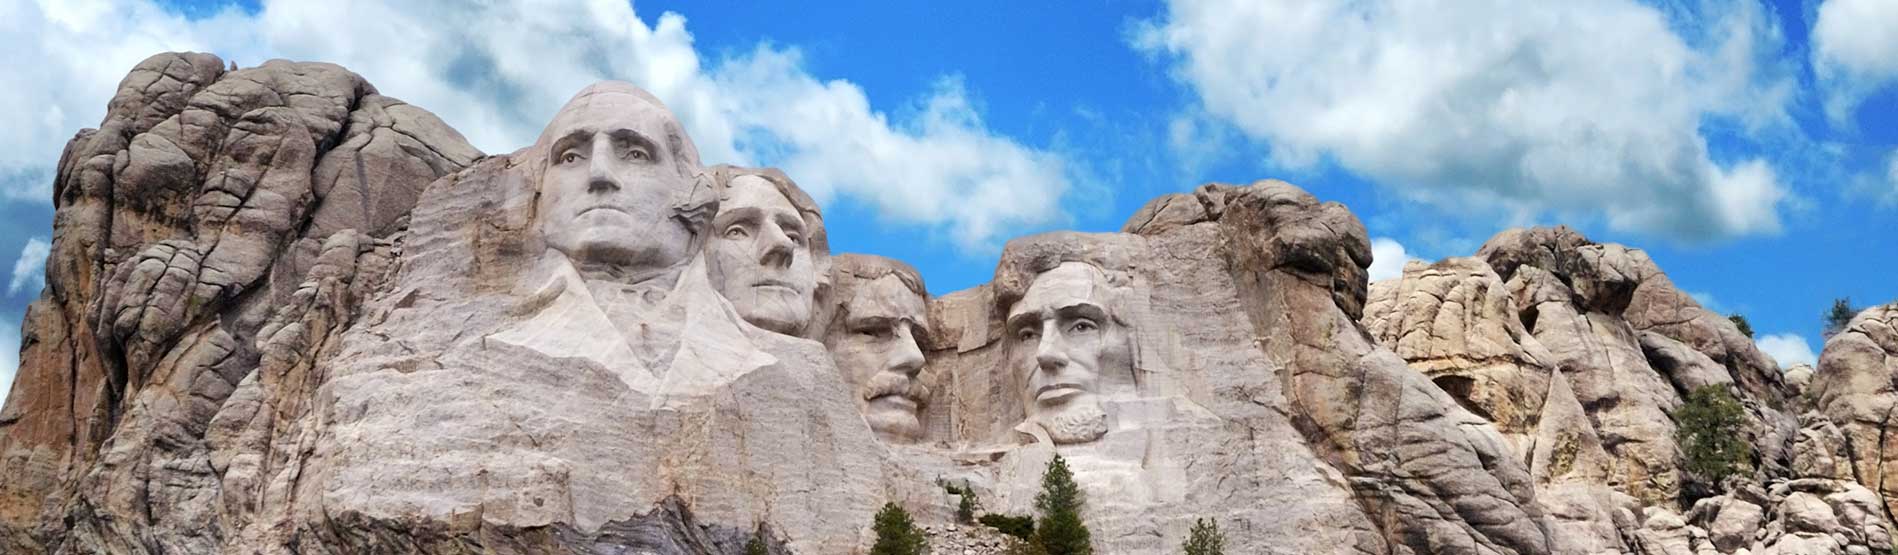 image of Mount Rushmore National Memorial